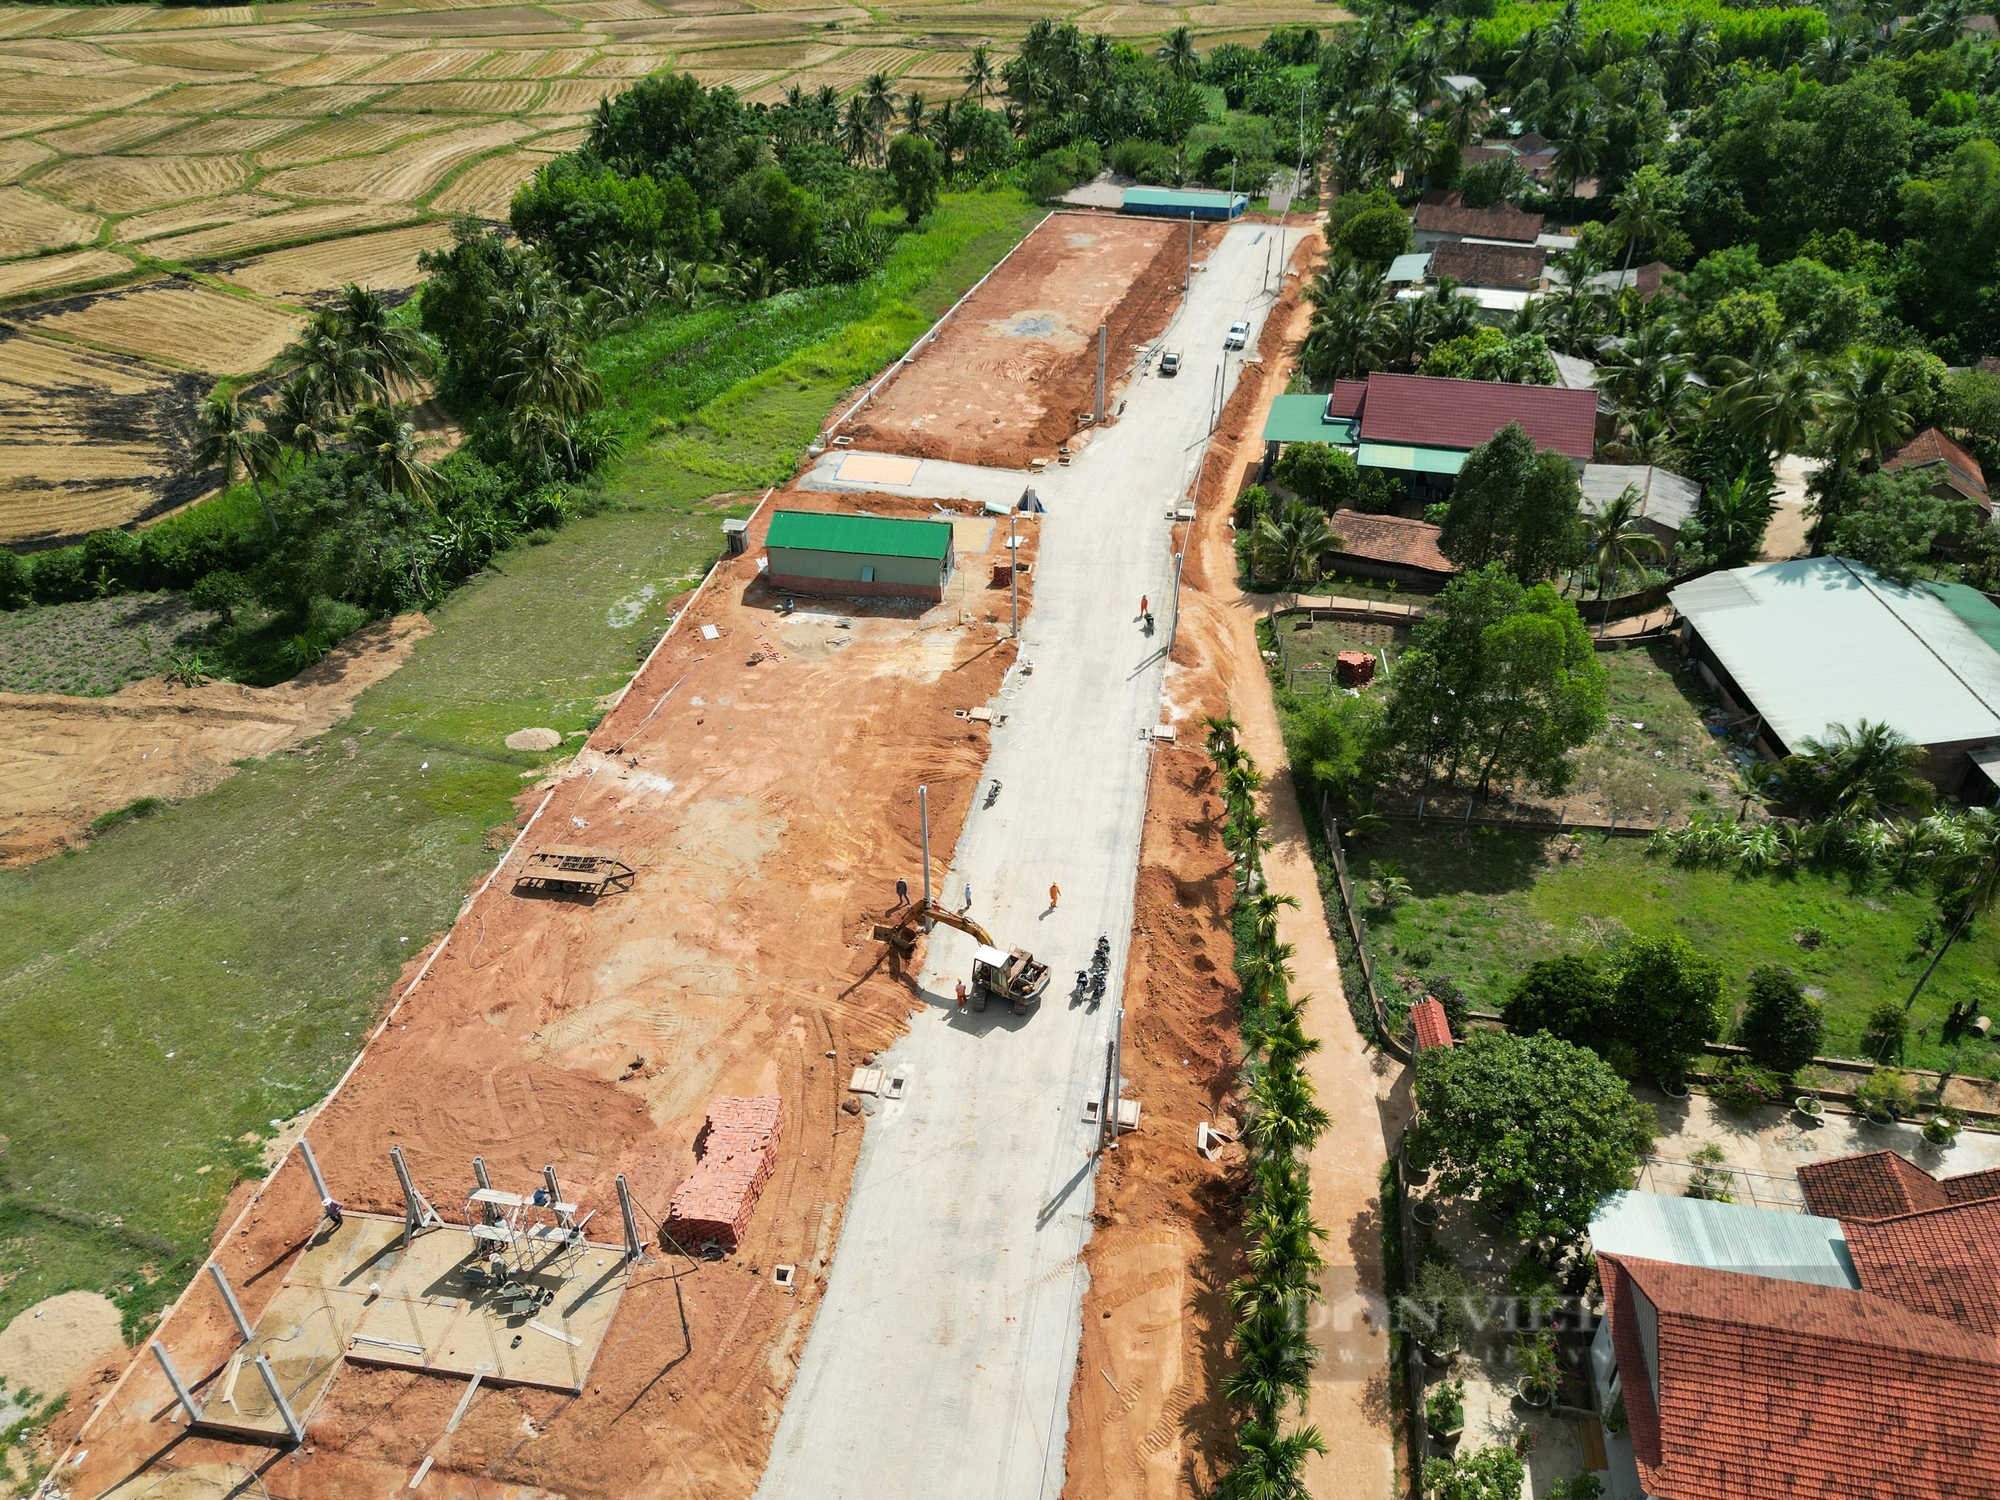 Giám đốc Sở TNMT Bình Định chịu trách nhiệm, nếu để thiếu đất, cát…gây chậm tiến độ dự án trọng điểm - Ảnh 2.